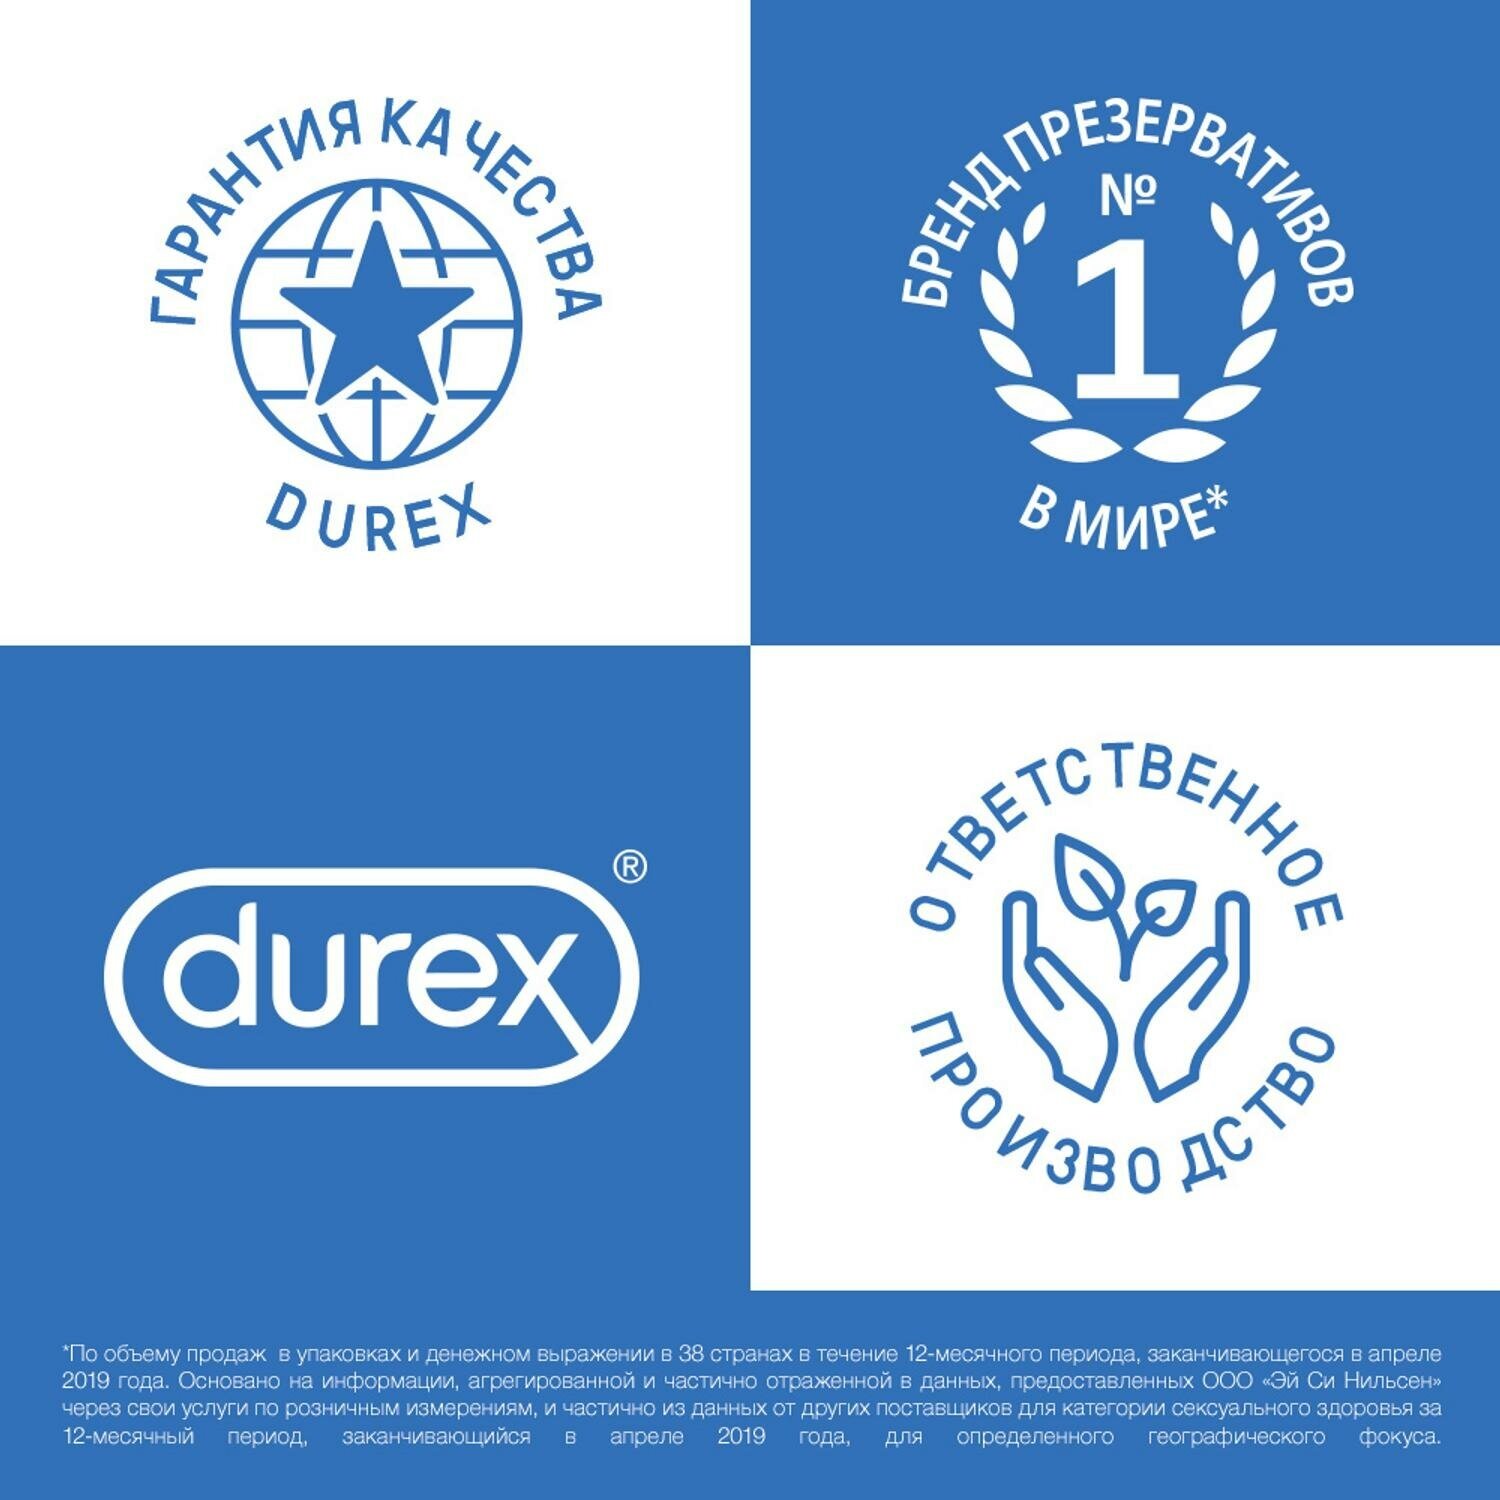 Презервативы Durex (Дюрекс) с анестетиком Infinity гладкие, вариант 2, 3 шт. Рекитт Бенкизер Хелскэар (ЮК) Лтд - фото №3